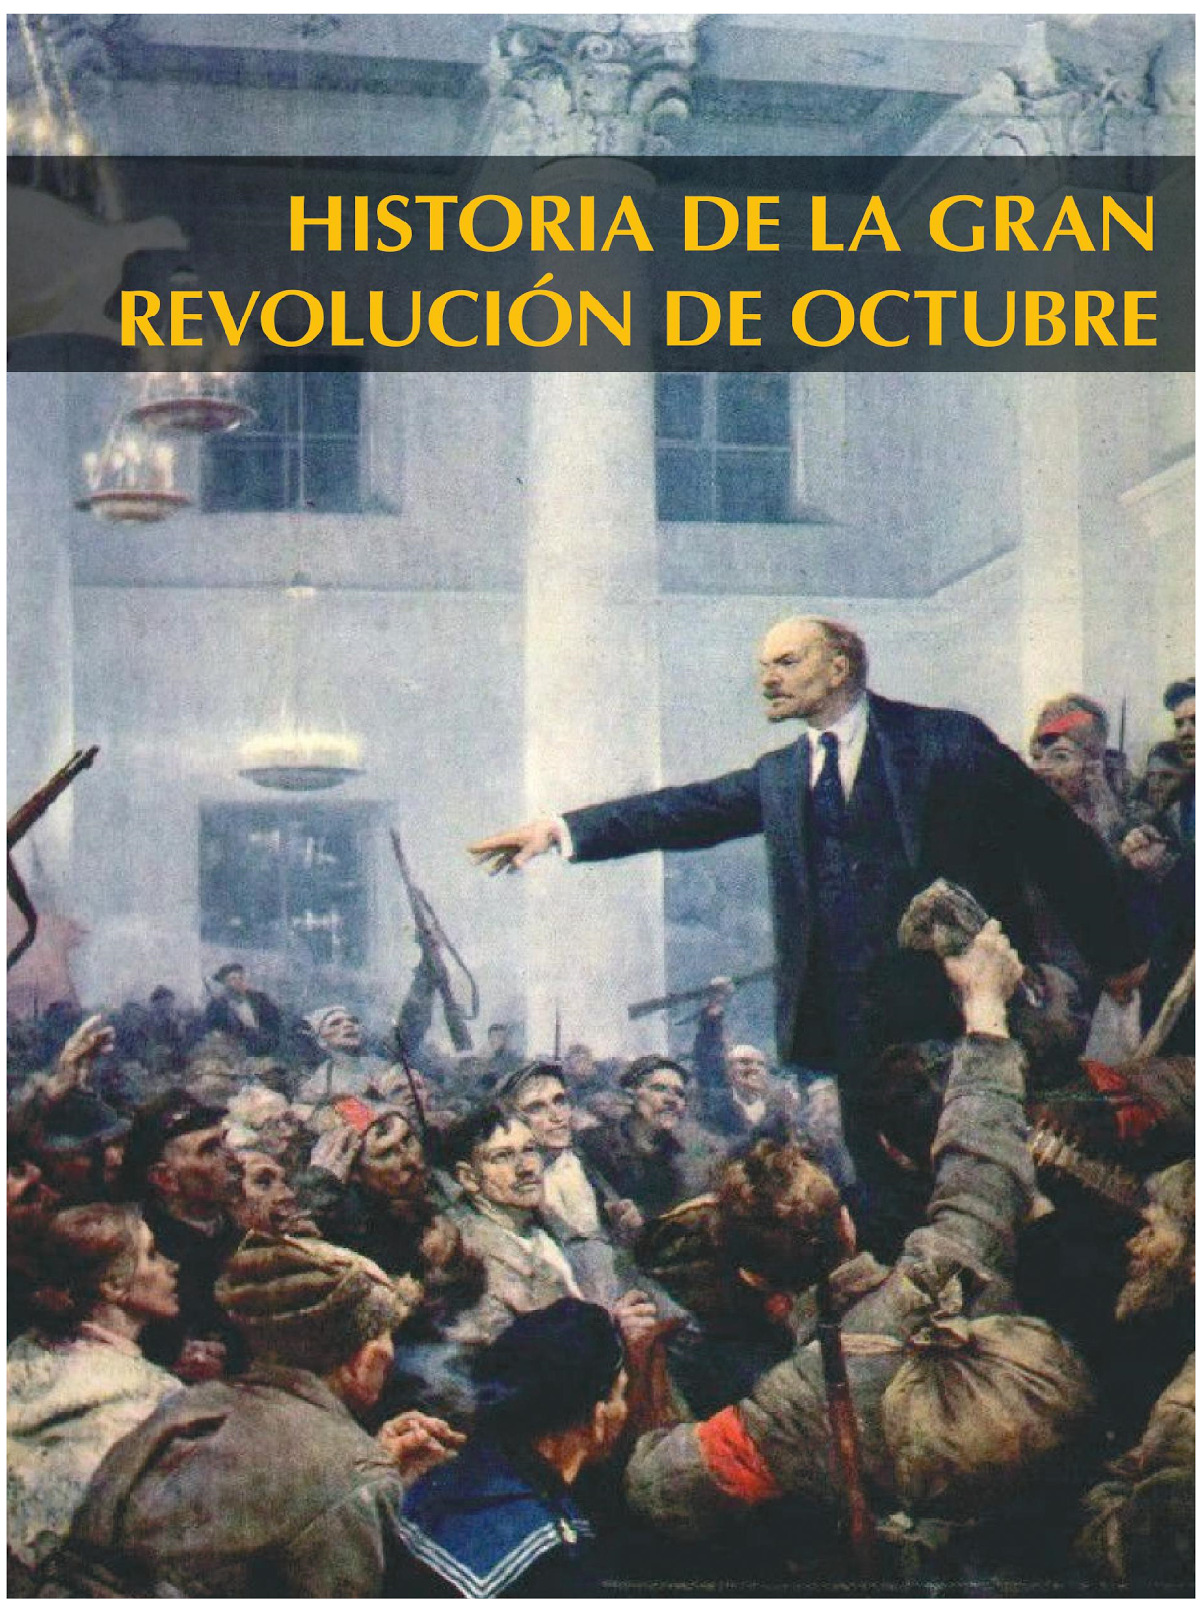 Historia de la Gran Revolución de Octubre, 22euros